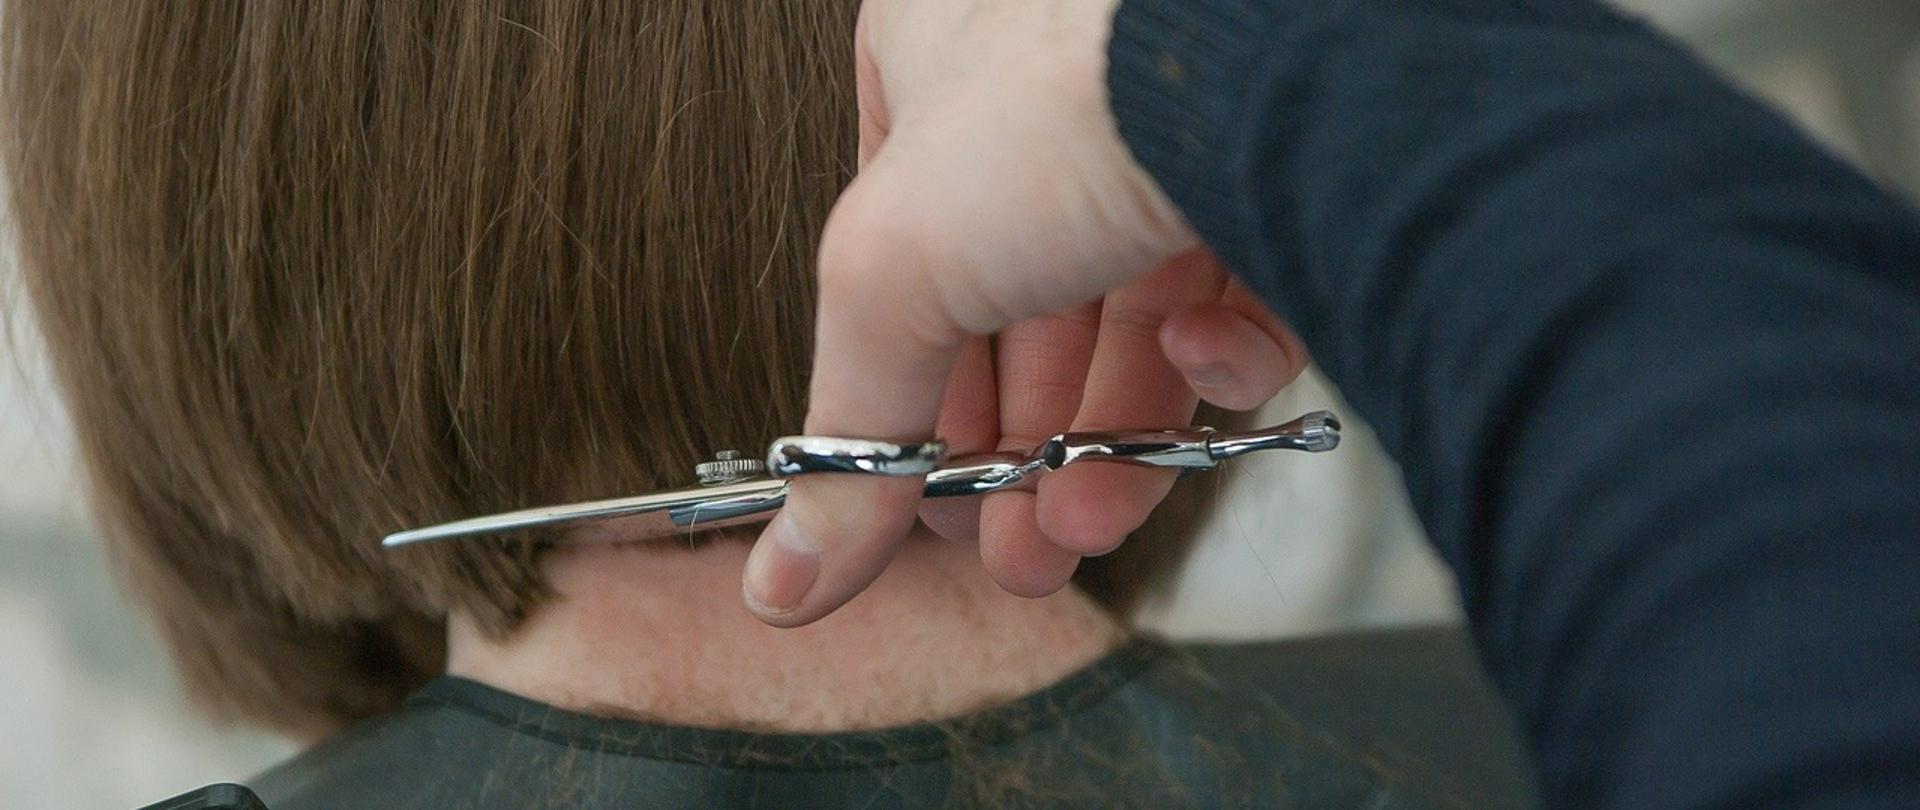 włosy kobiety do ramion strzyżone w salonie fryzjerskim. Widoczna ręka z nożyczkami i kawałek grzebienia, klientka siedzi tyłem. 